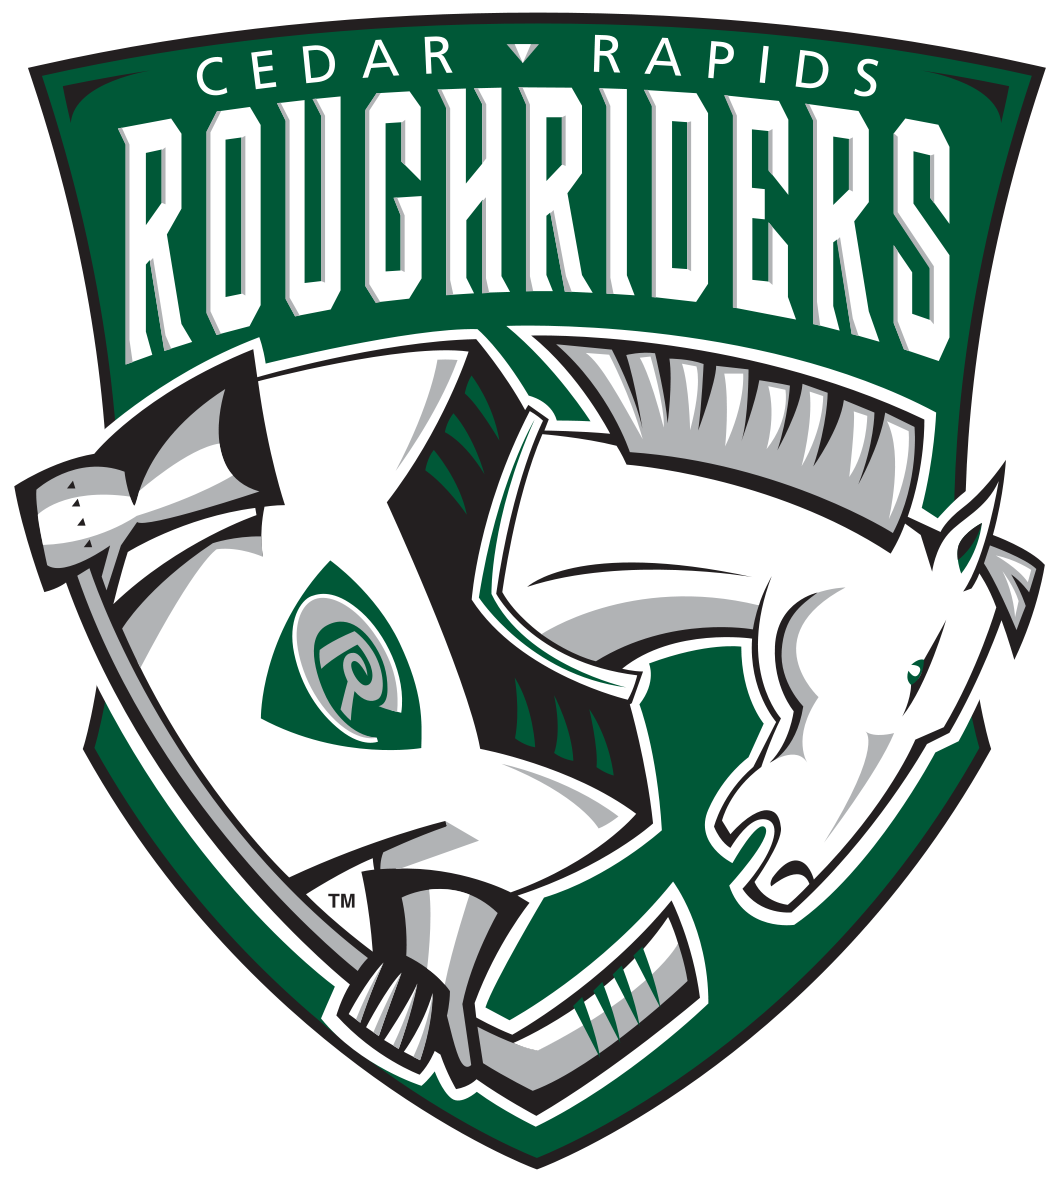 Rough Riders Cedar Rapids (1200x1267)